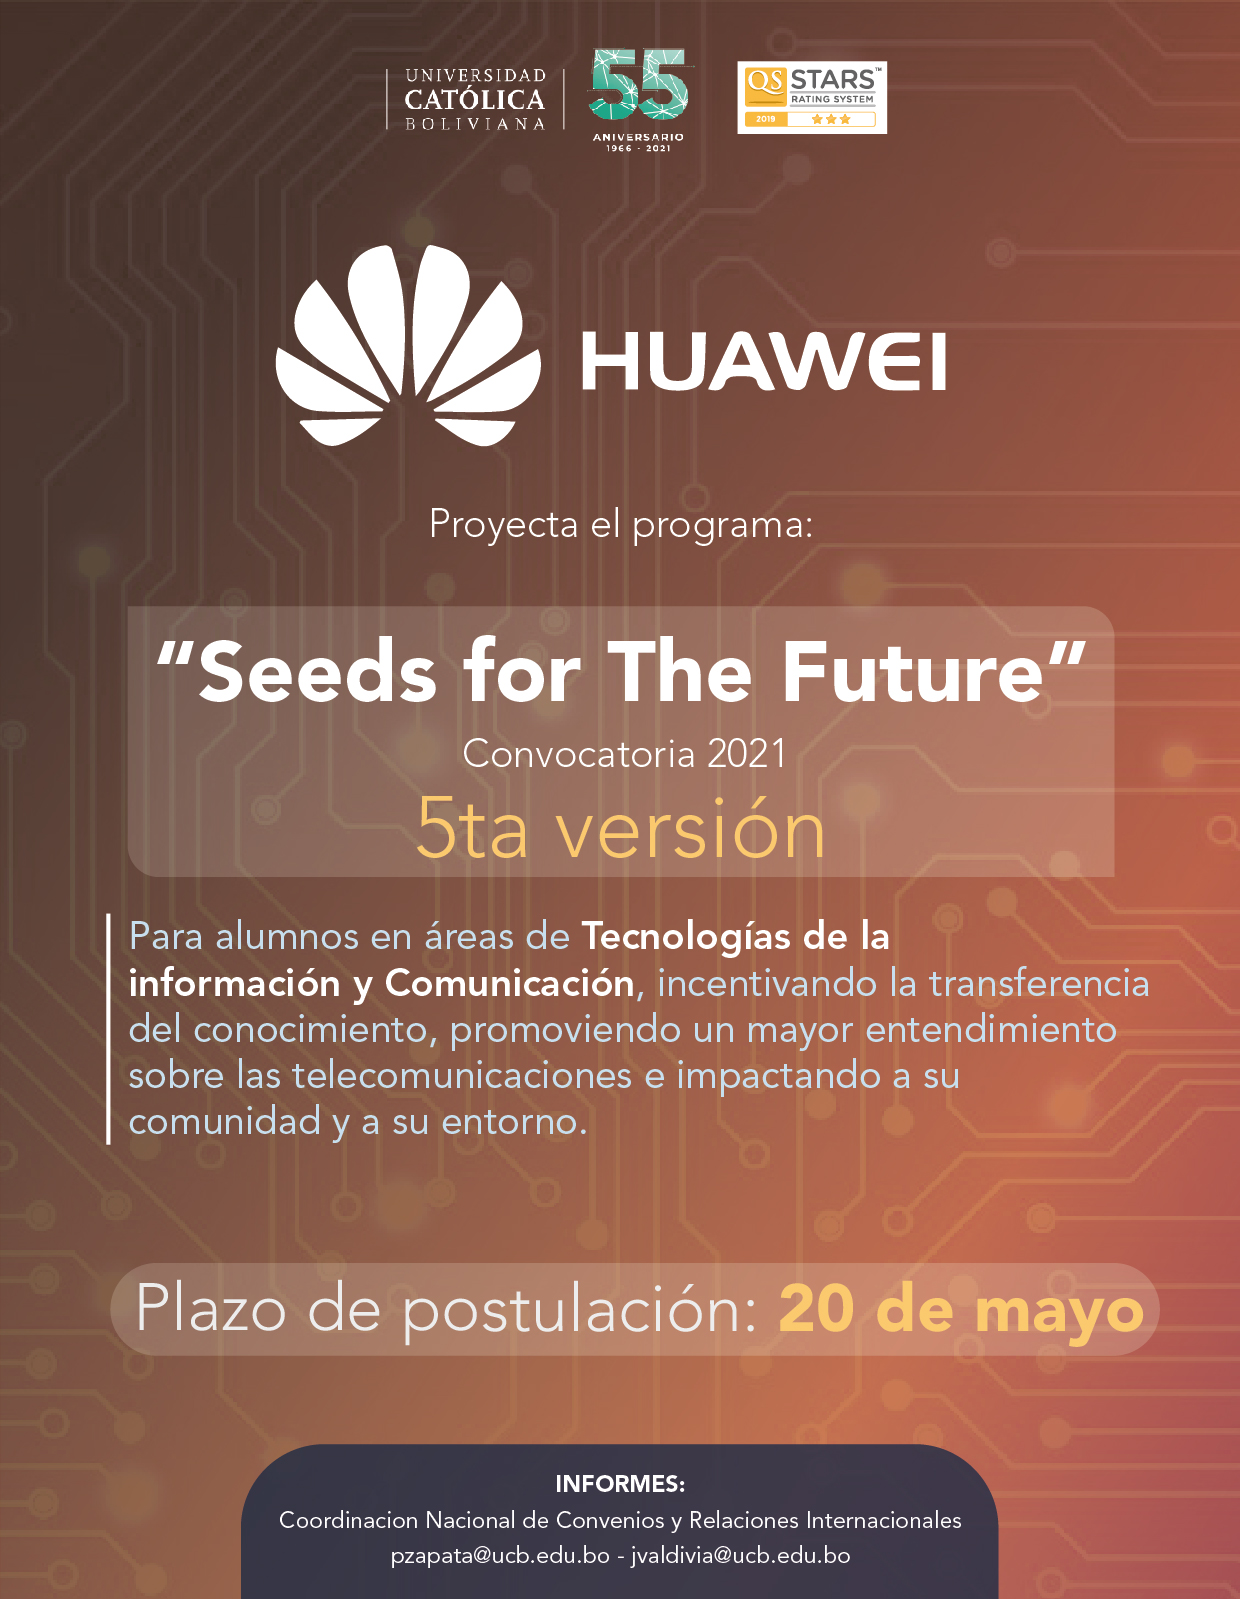 Convocatoria 2021 de Huawei “SEEDS FOR THE FUTURE”